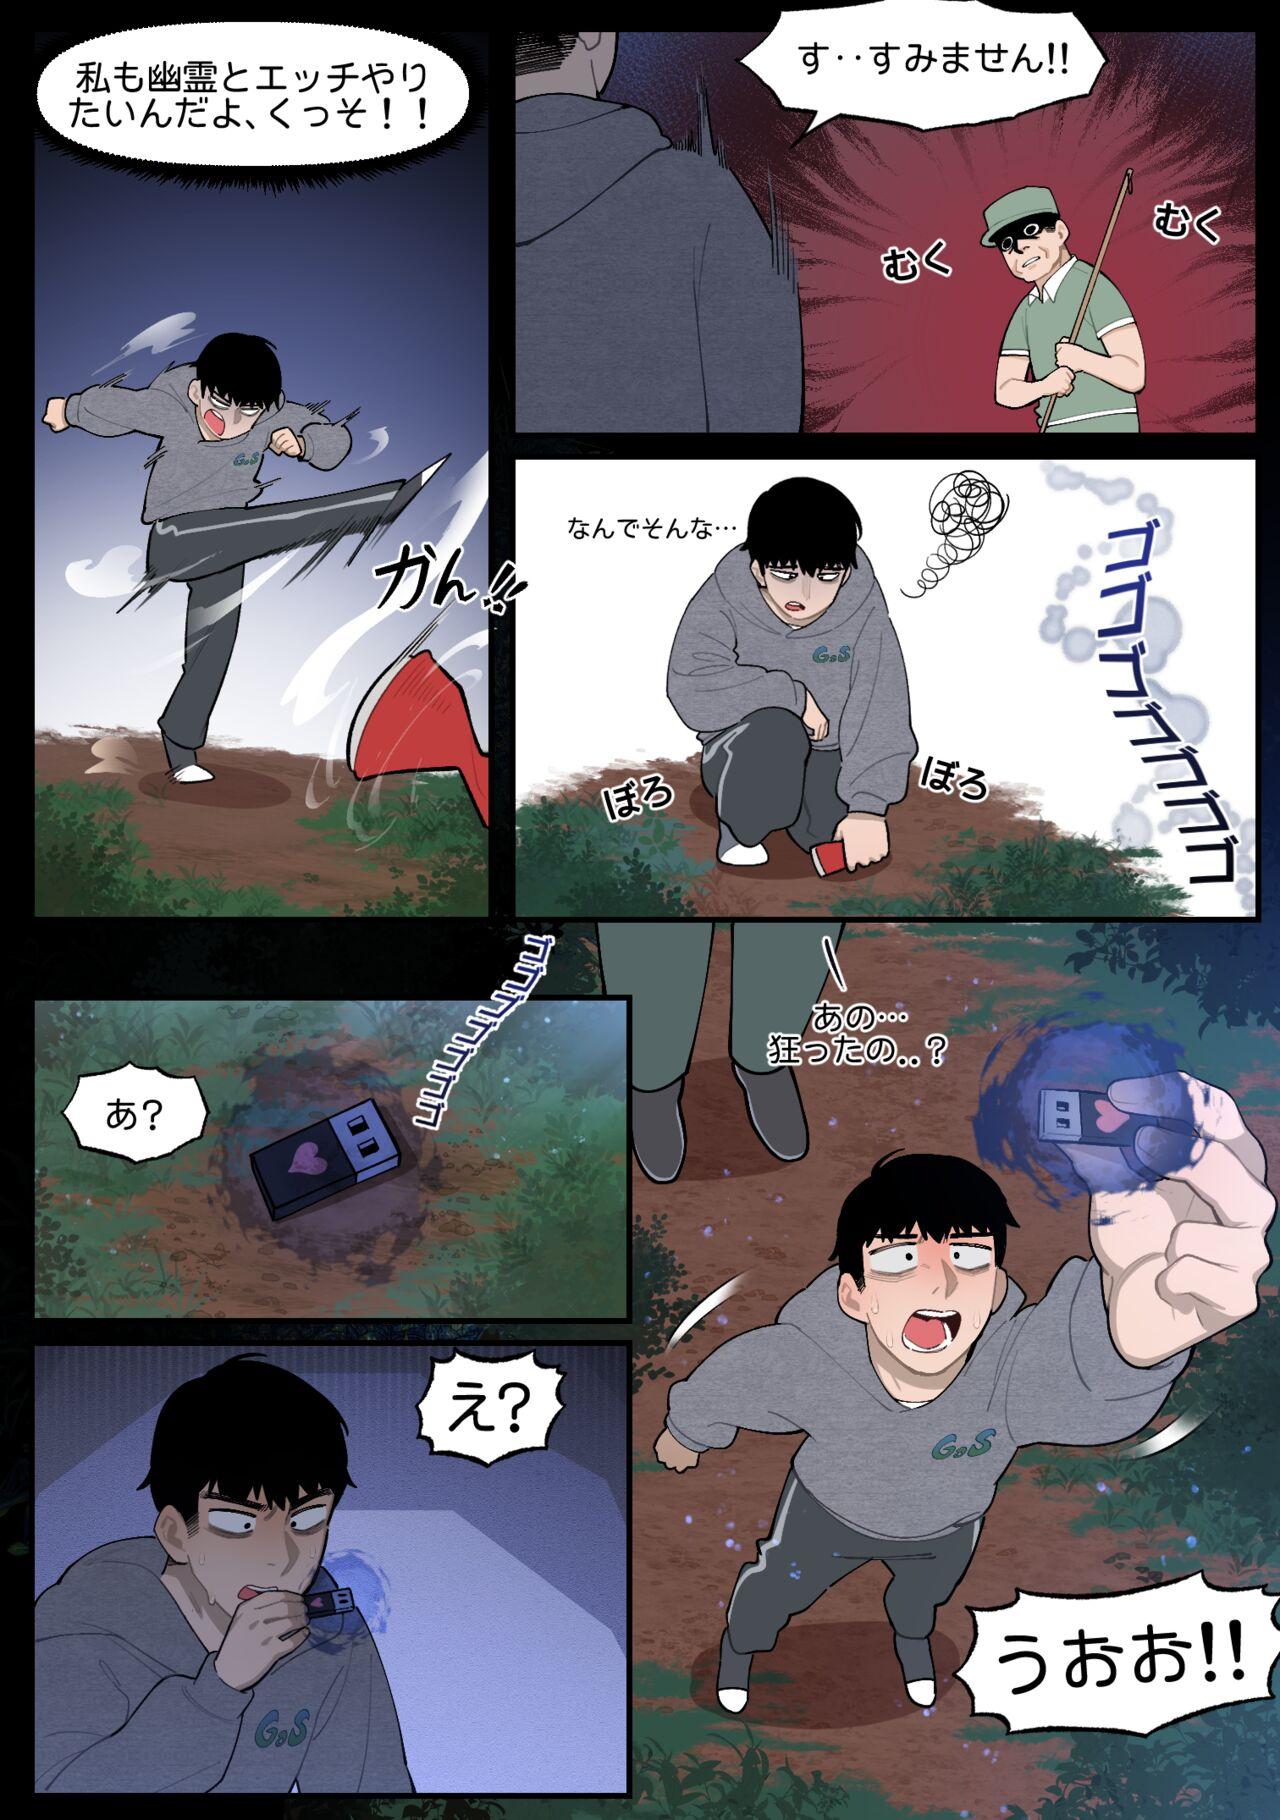 Ruiva 22.10 - Original Anime - Page 3